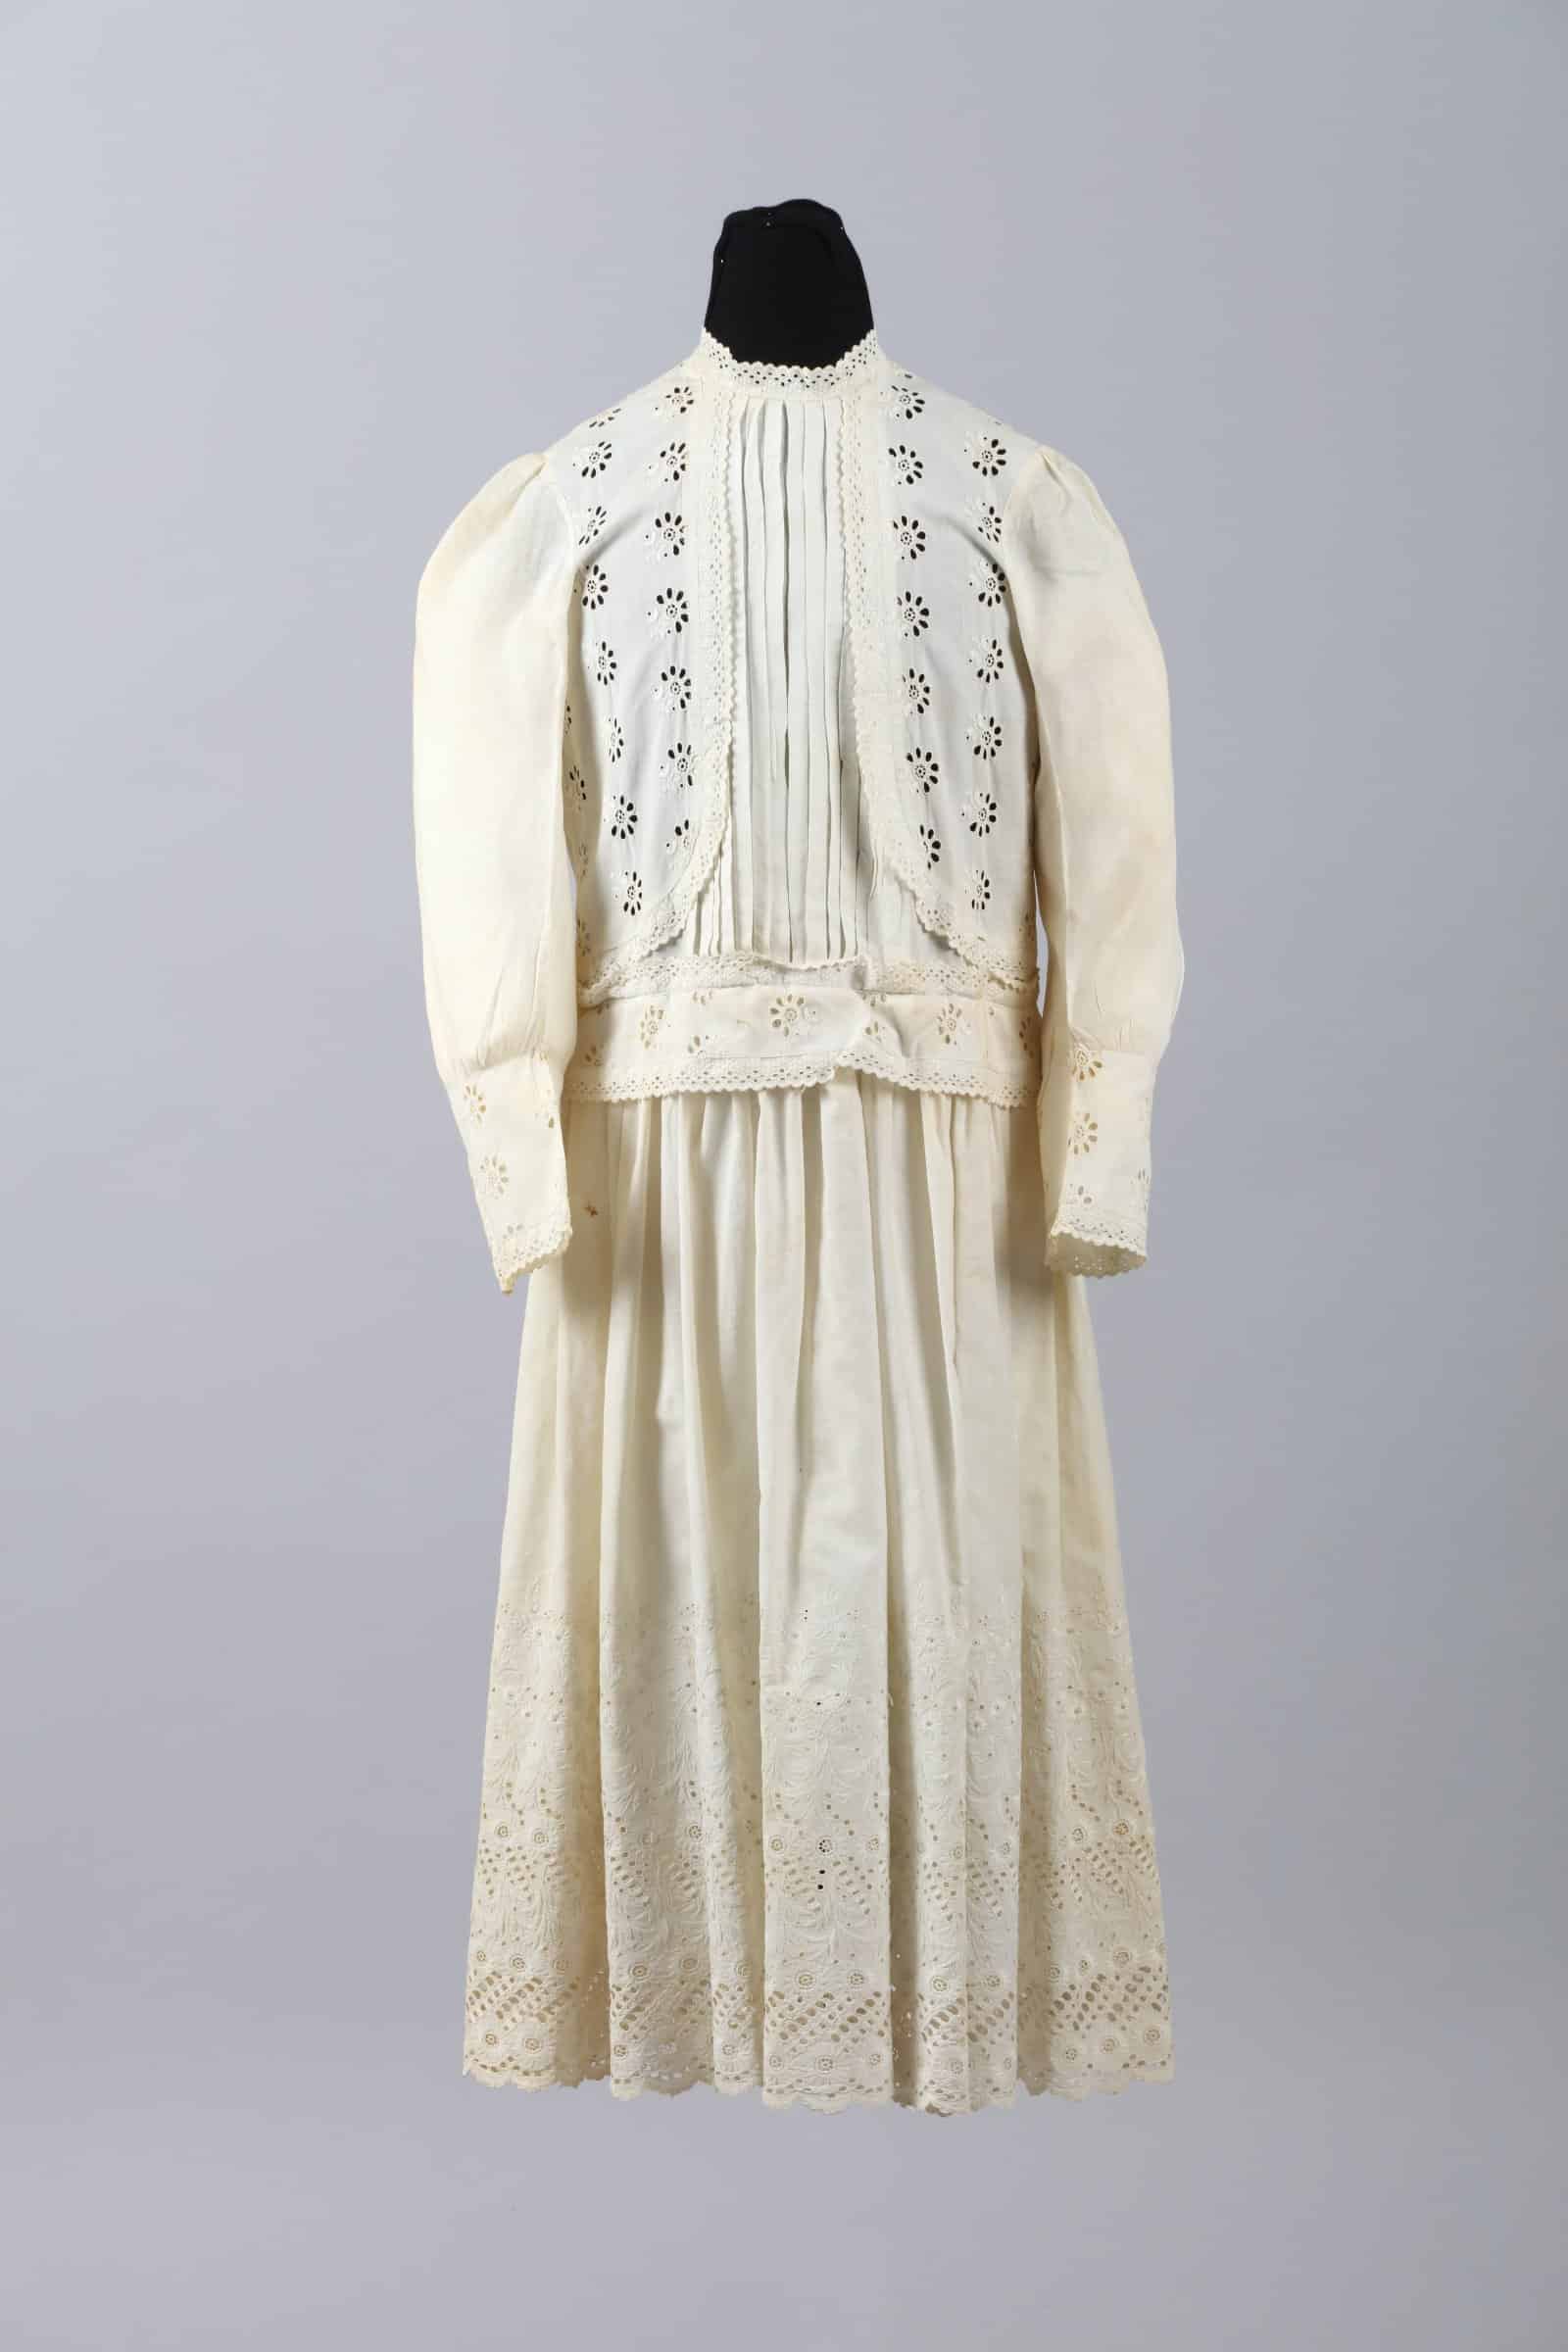 Child’s Dress, around 1893, cotton